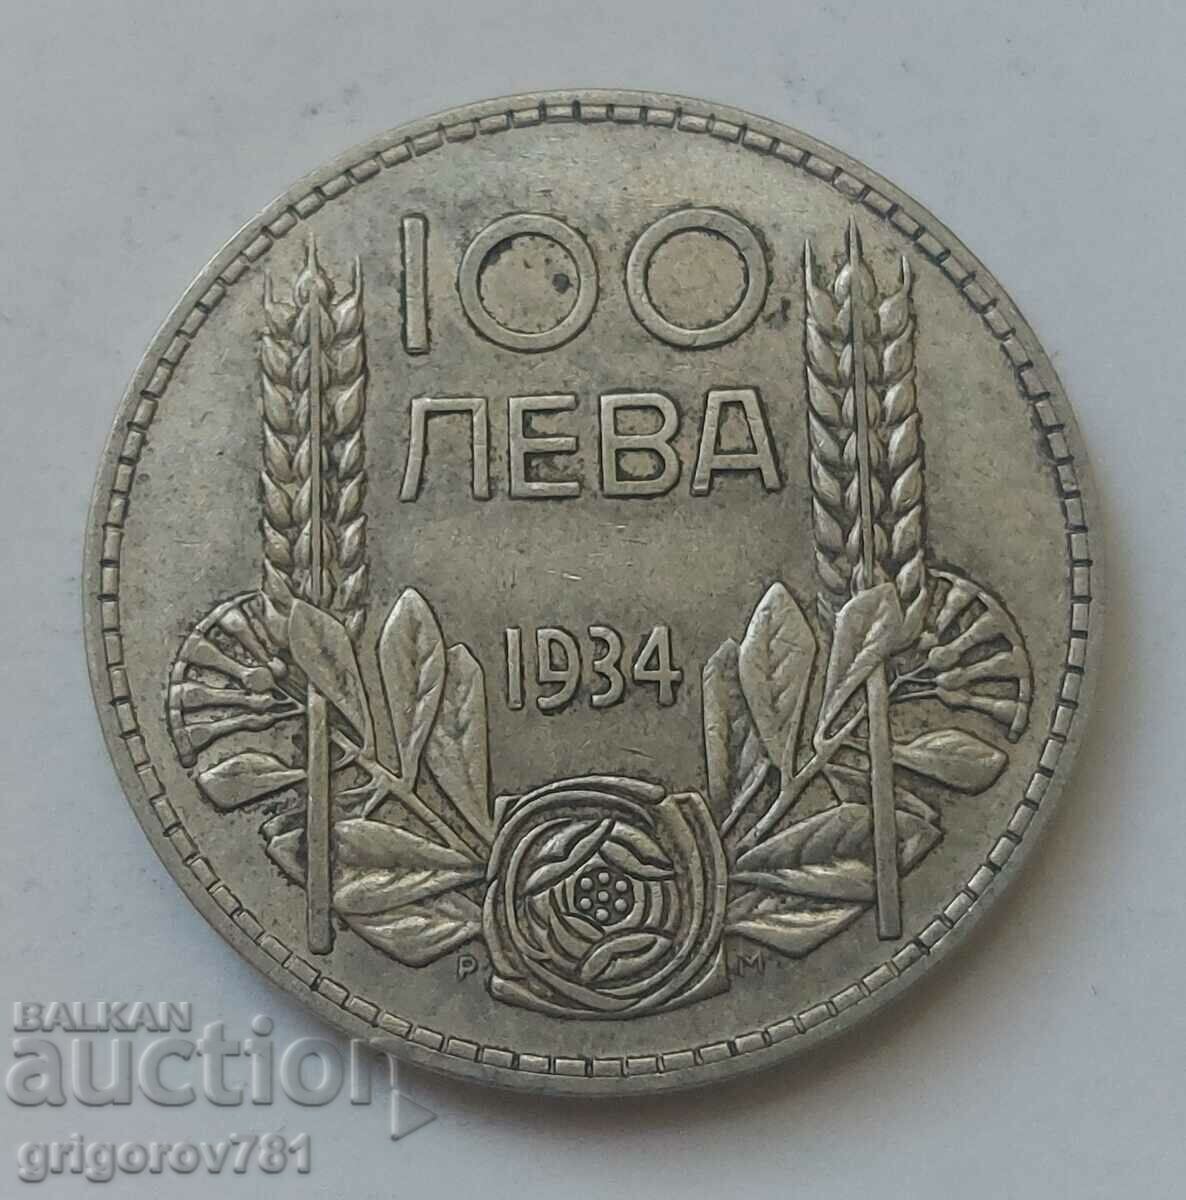 Ασήμι 100 λέβα Βουλγαρία 1934 - ασημένιο νόμισμα #72